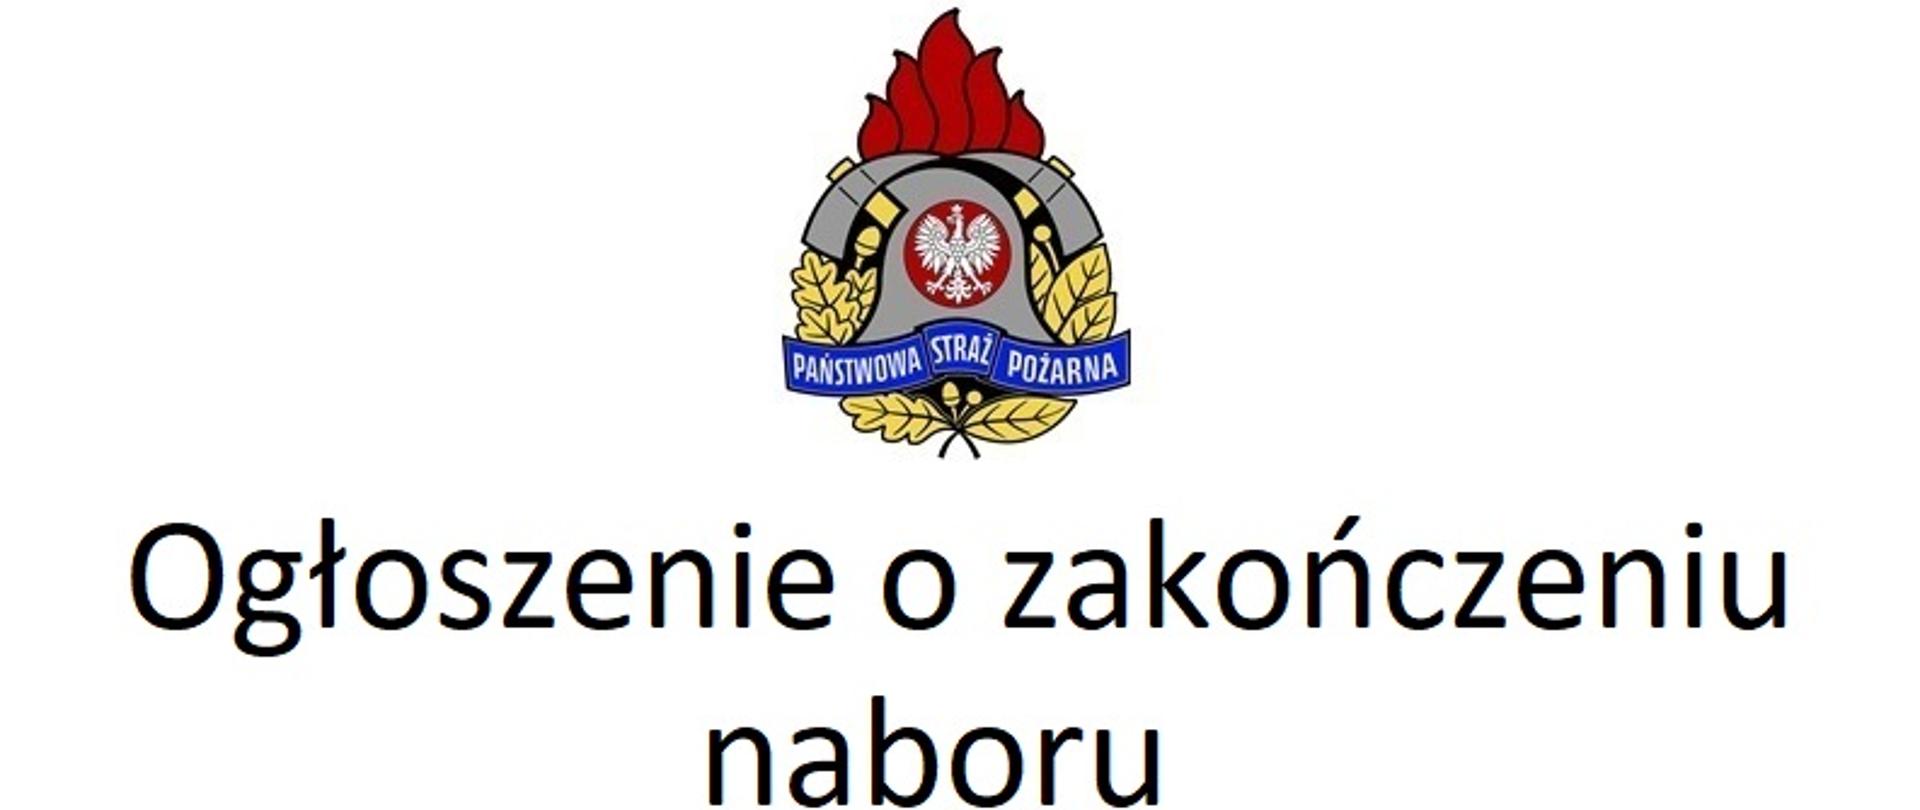 Na zdjęciu logo Państwowej Straży Pożarnej, a pod nim napis "Ogłoszenie o zakończeniu naboru"